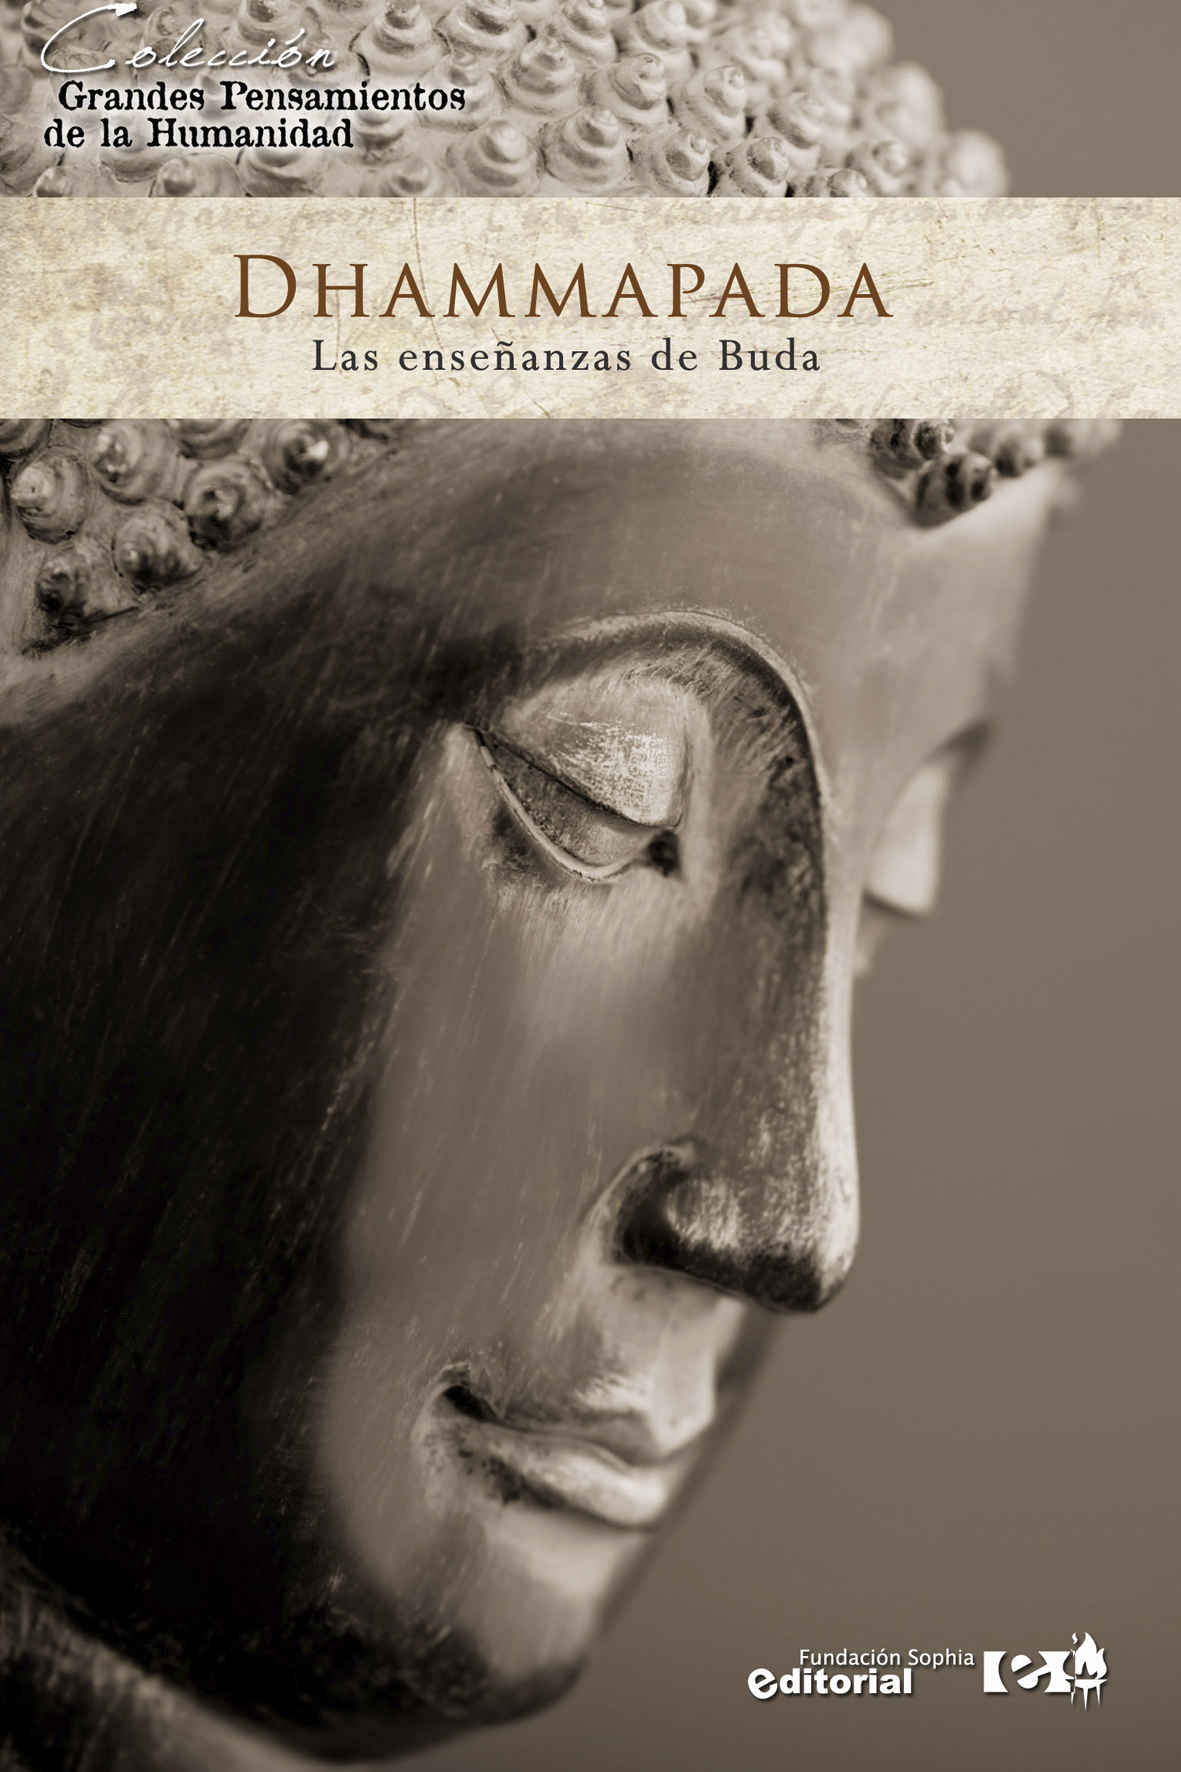 Dhammapada las enseñanzas del Buda Gautama